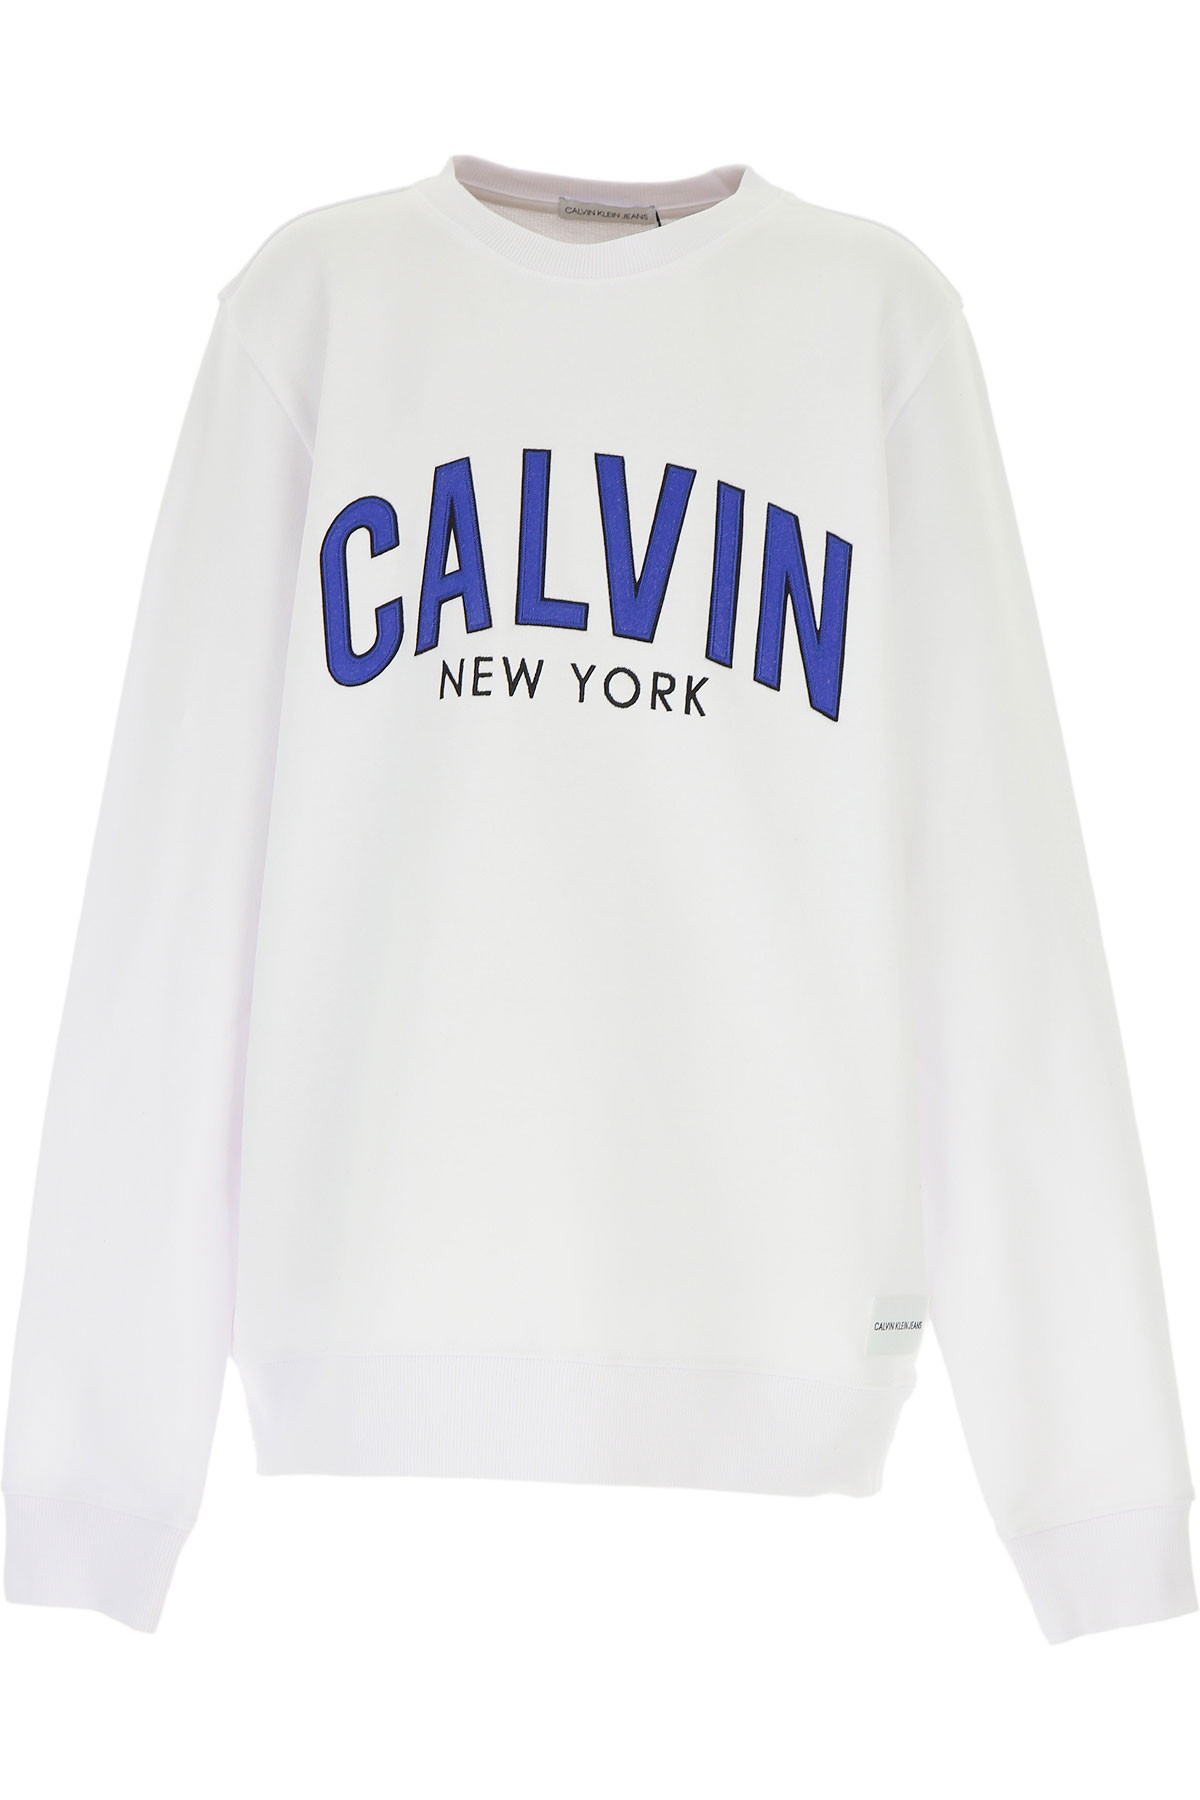 Calvin Klein Kinder Sweatshirt & Kapuzenpullover für Jungen Günstig im Sale, Weiss, Baumwolle, 2017, 14Y 16Y